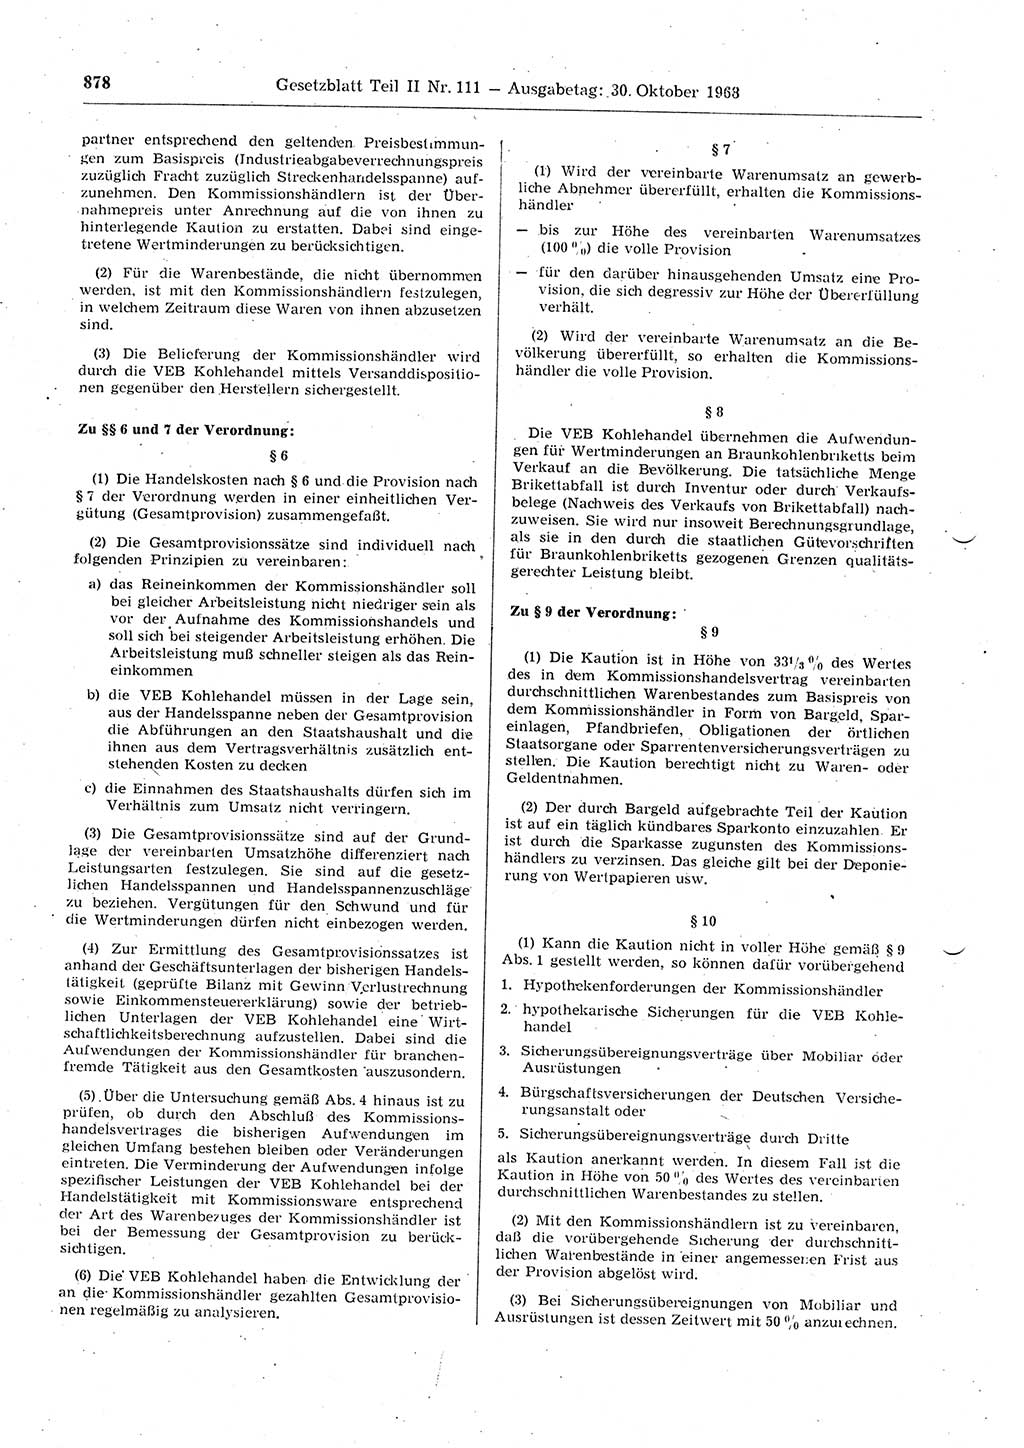 Gesetzblatt (GBl.) der Deutschen Demokratischen Republik (DDR) Teil ⅠⅠ 1968, Seite 878 (GBl. DDR ⅠⅠ 1968, S. 878)